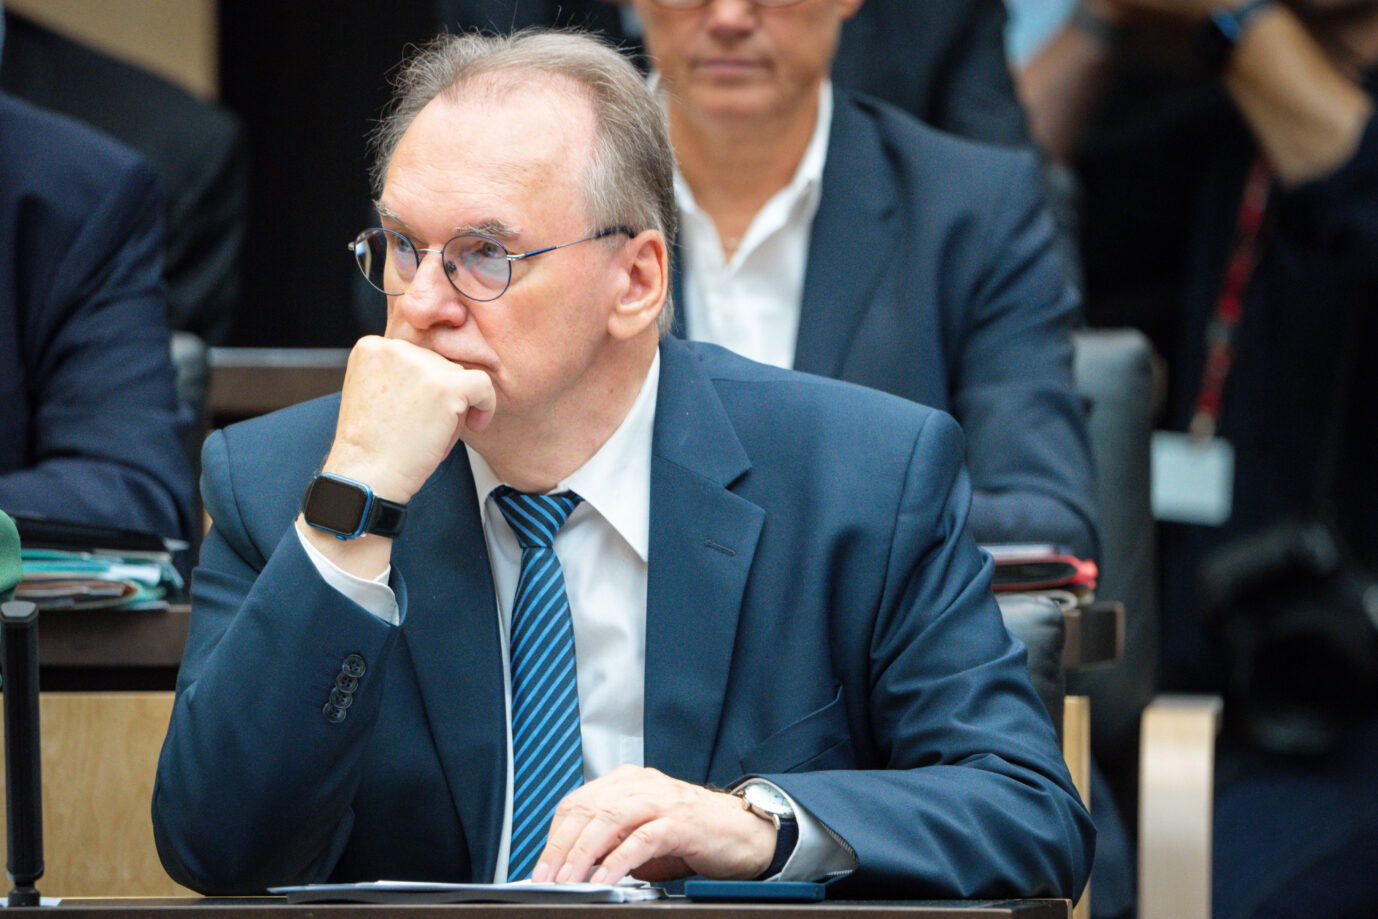 Auf dem Foto befindet sich der Ministerpräsident von Sachsen-Anhalt, Reiner Haseloff. Der Landtagsfraktion seiner Partei, der CDU, wird nun Steuergeldverschwendung vorgeworfen. (Themenbild/Symbolbild)